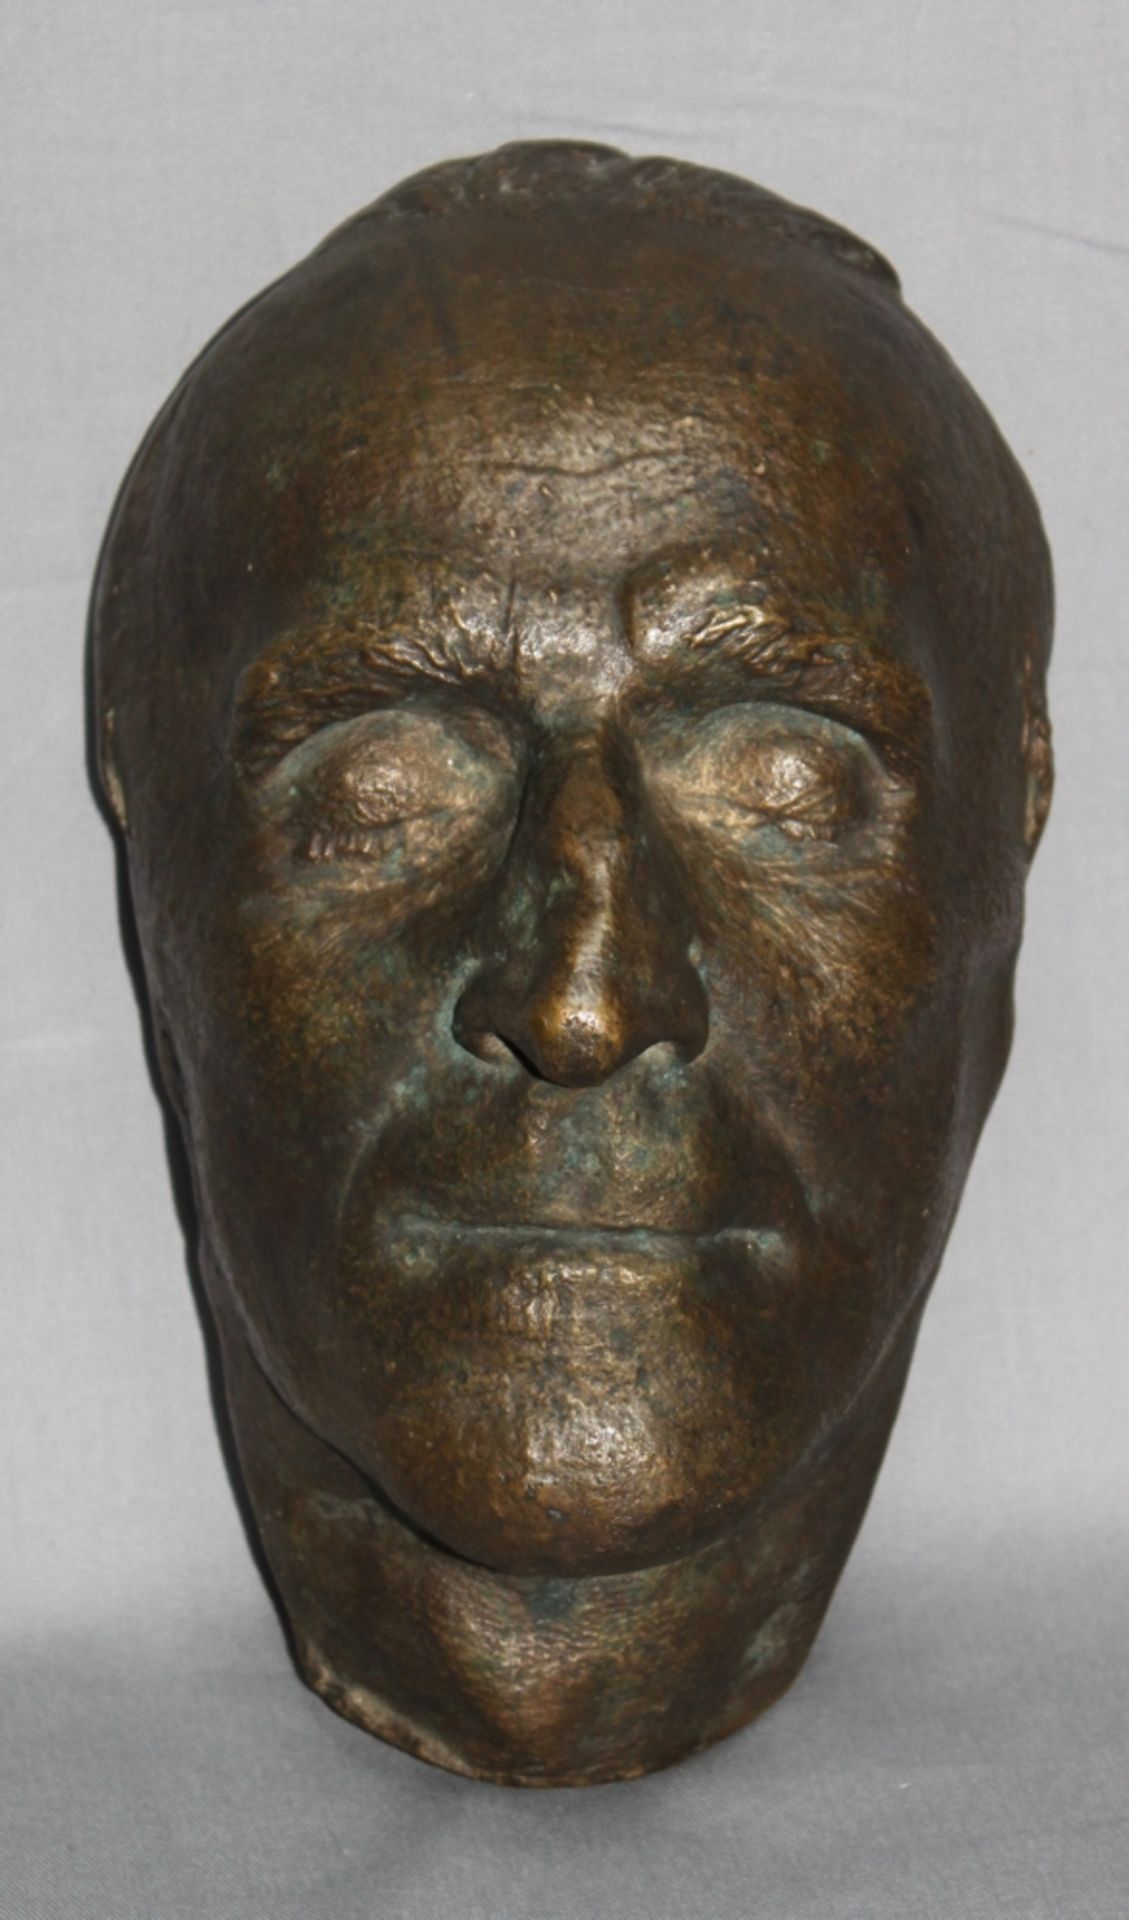 Metall. Bronzeskulptur. Porträt / Kopf eines Unbekannten. Nicht signiert und datiert, aus der